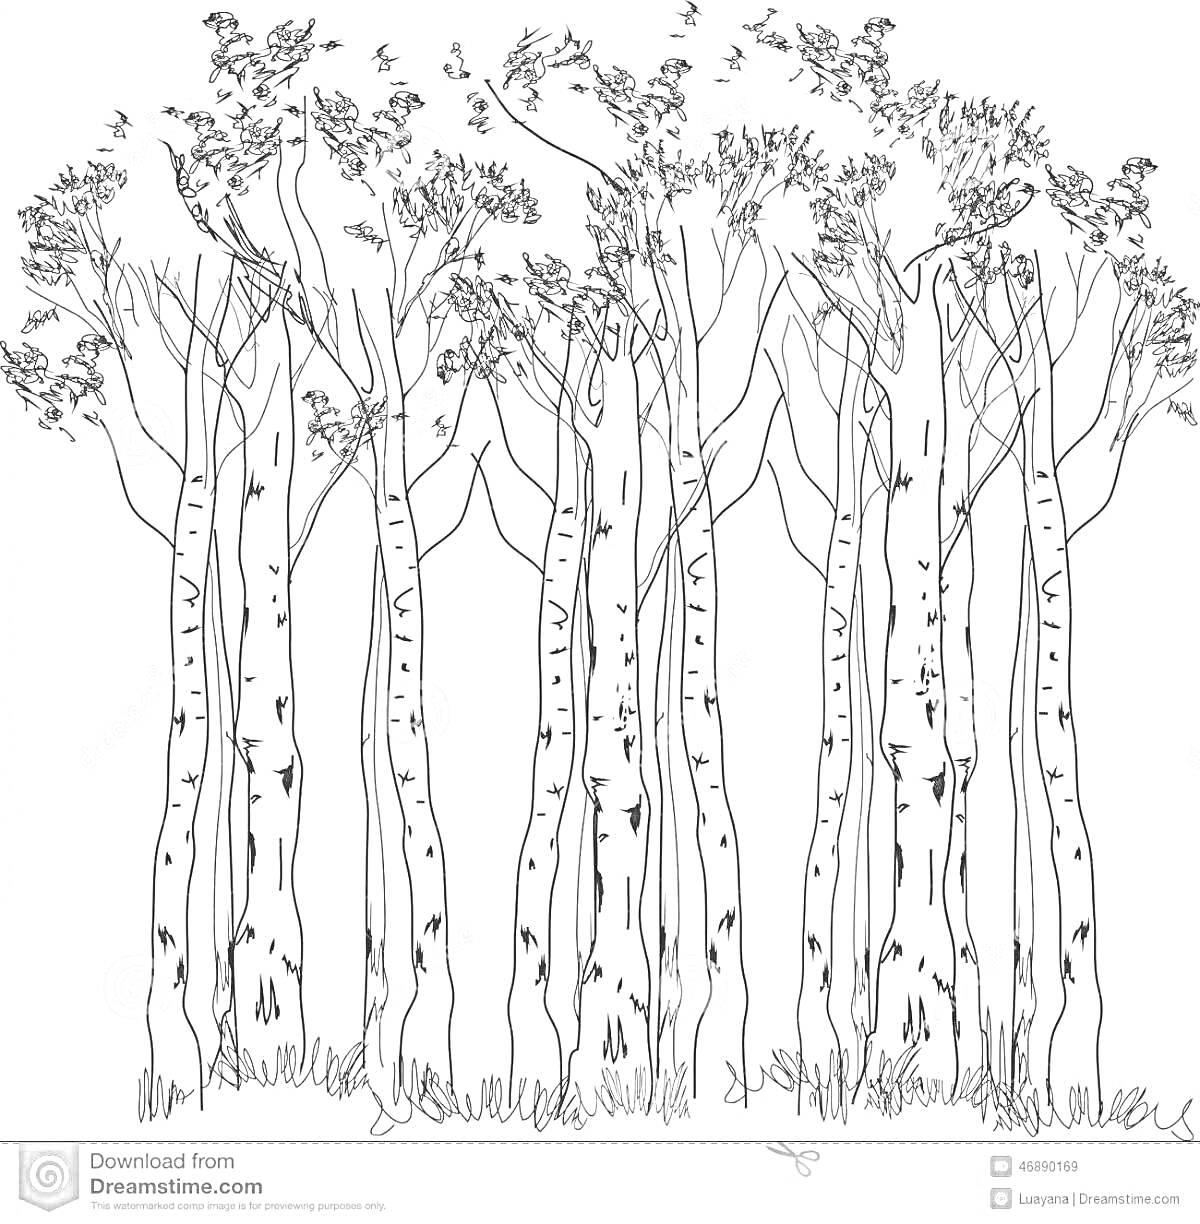 Раскраска Рисунок с рядом белых берез с листвой на ветвях и травой у основания стволов